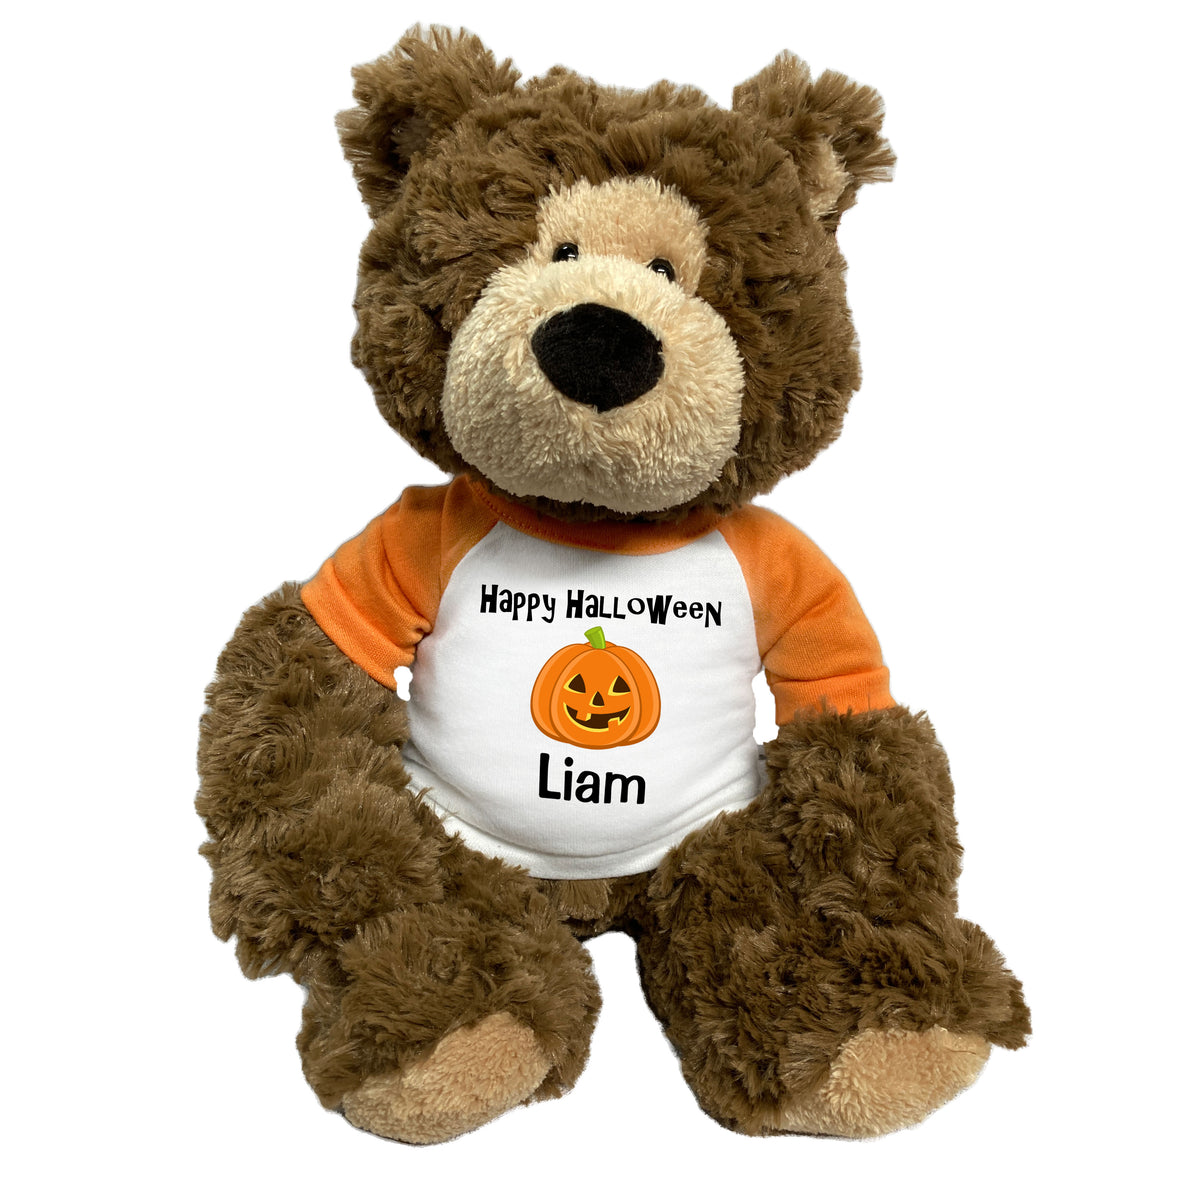 Personalized Halloween Teddy Bear - 14 Inch Bear Hugs